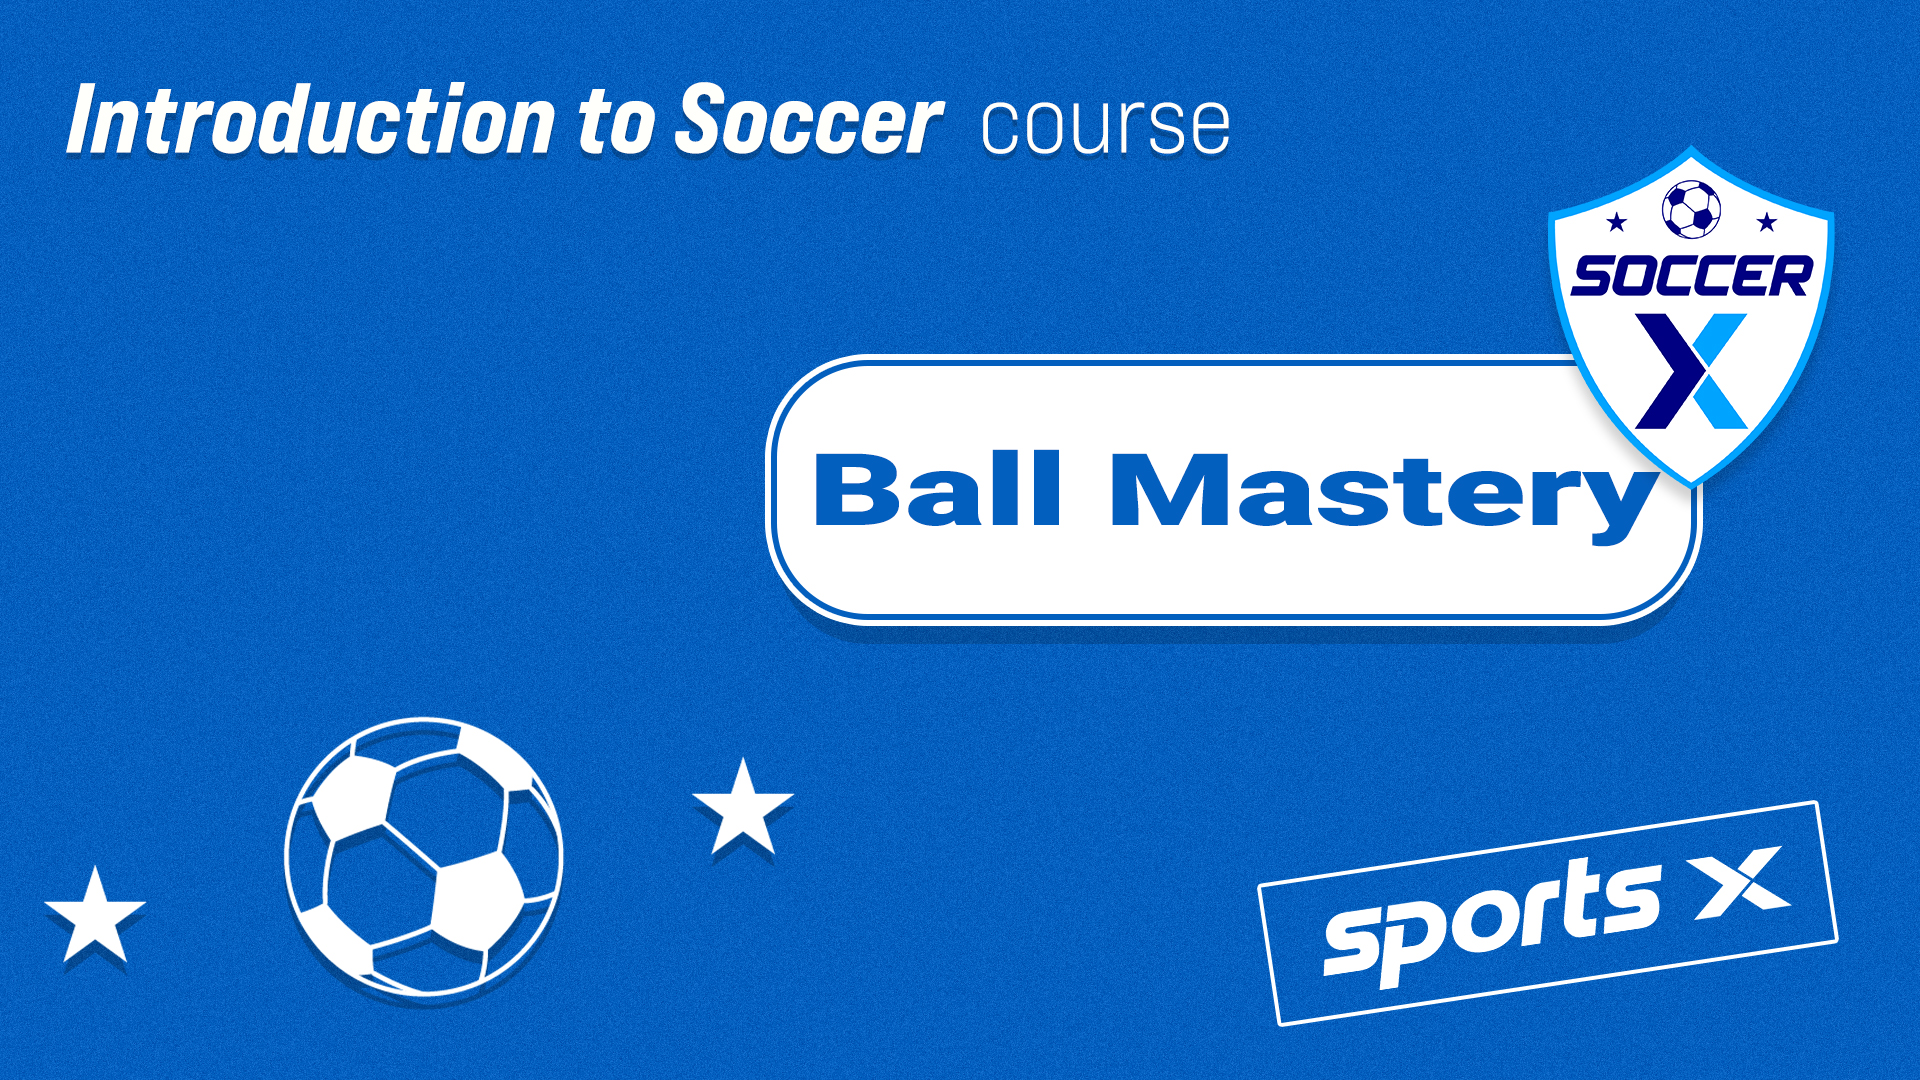 Ball Mastery